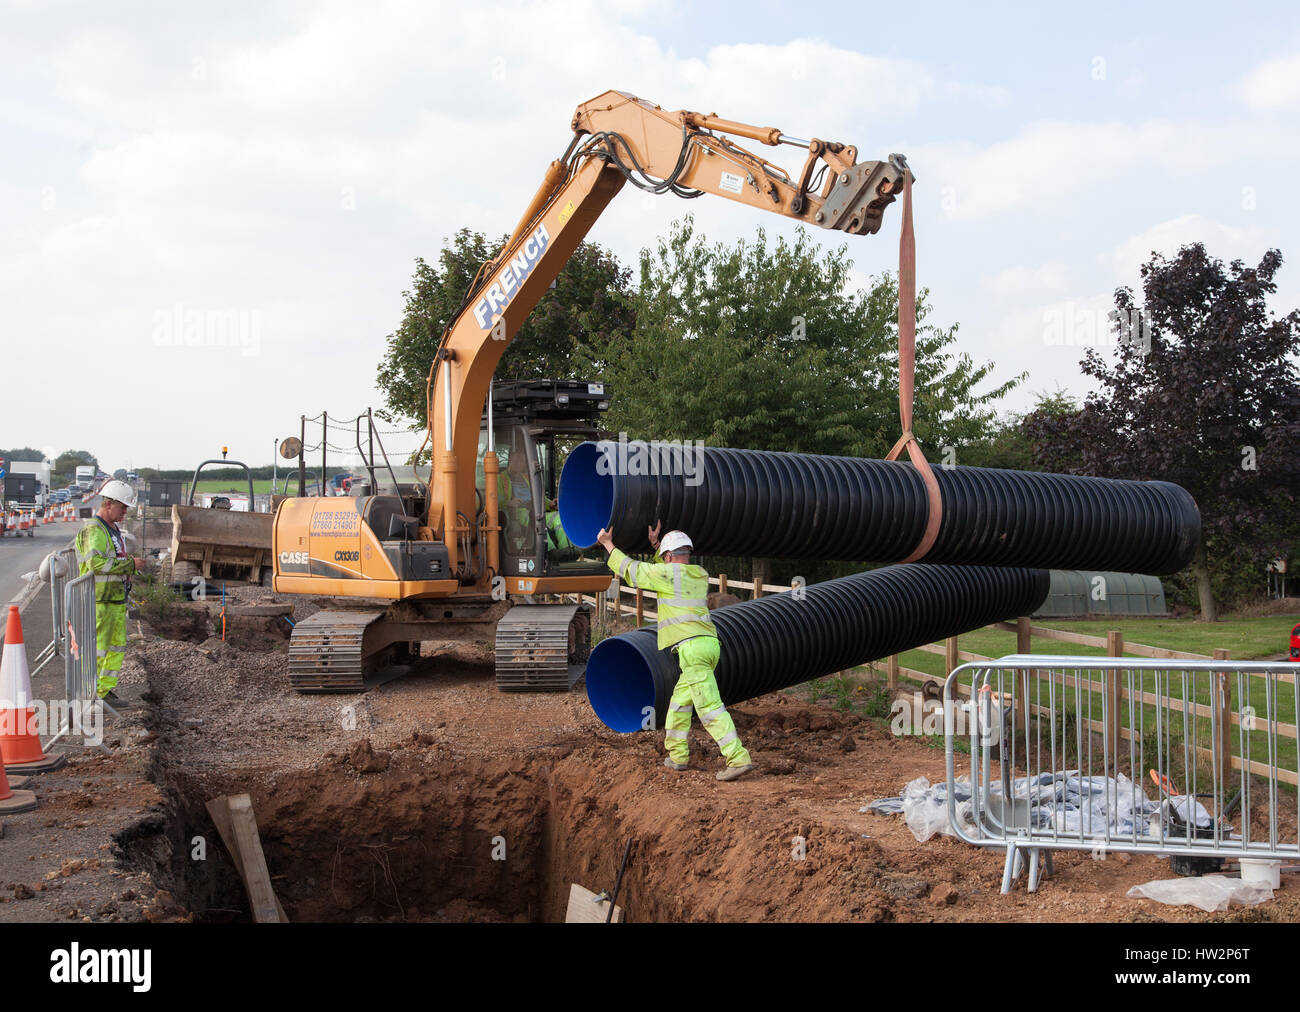 Tuyaux de drainage en cours d'installation dans le cadre d'une nouvelle section de l'A5 près de Nuneaton. Le génie civil, la construction de routes, de développement, de l'infrastructure Banque D'Images